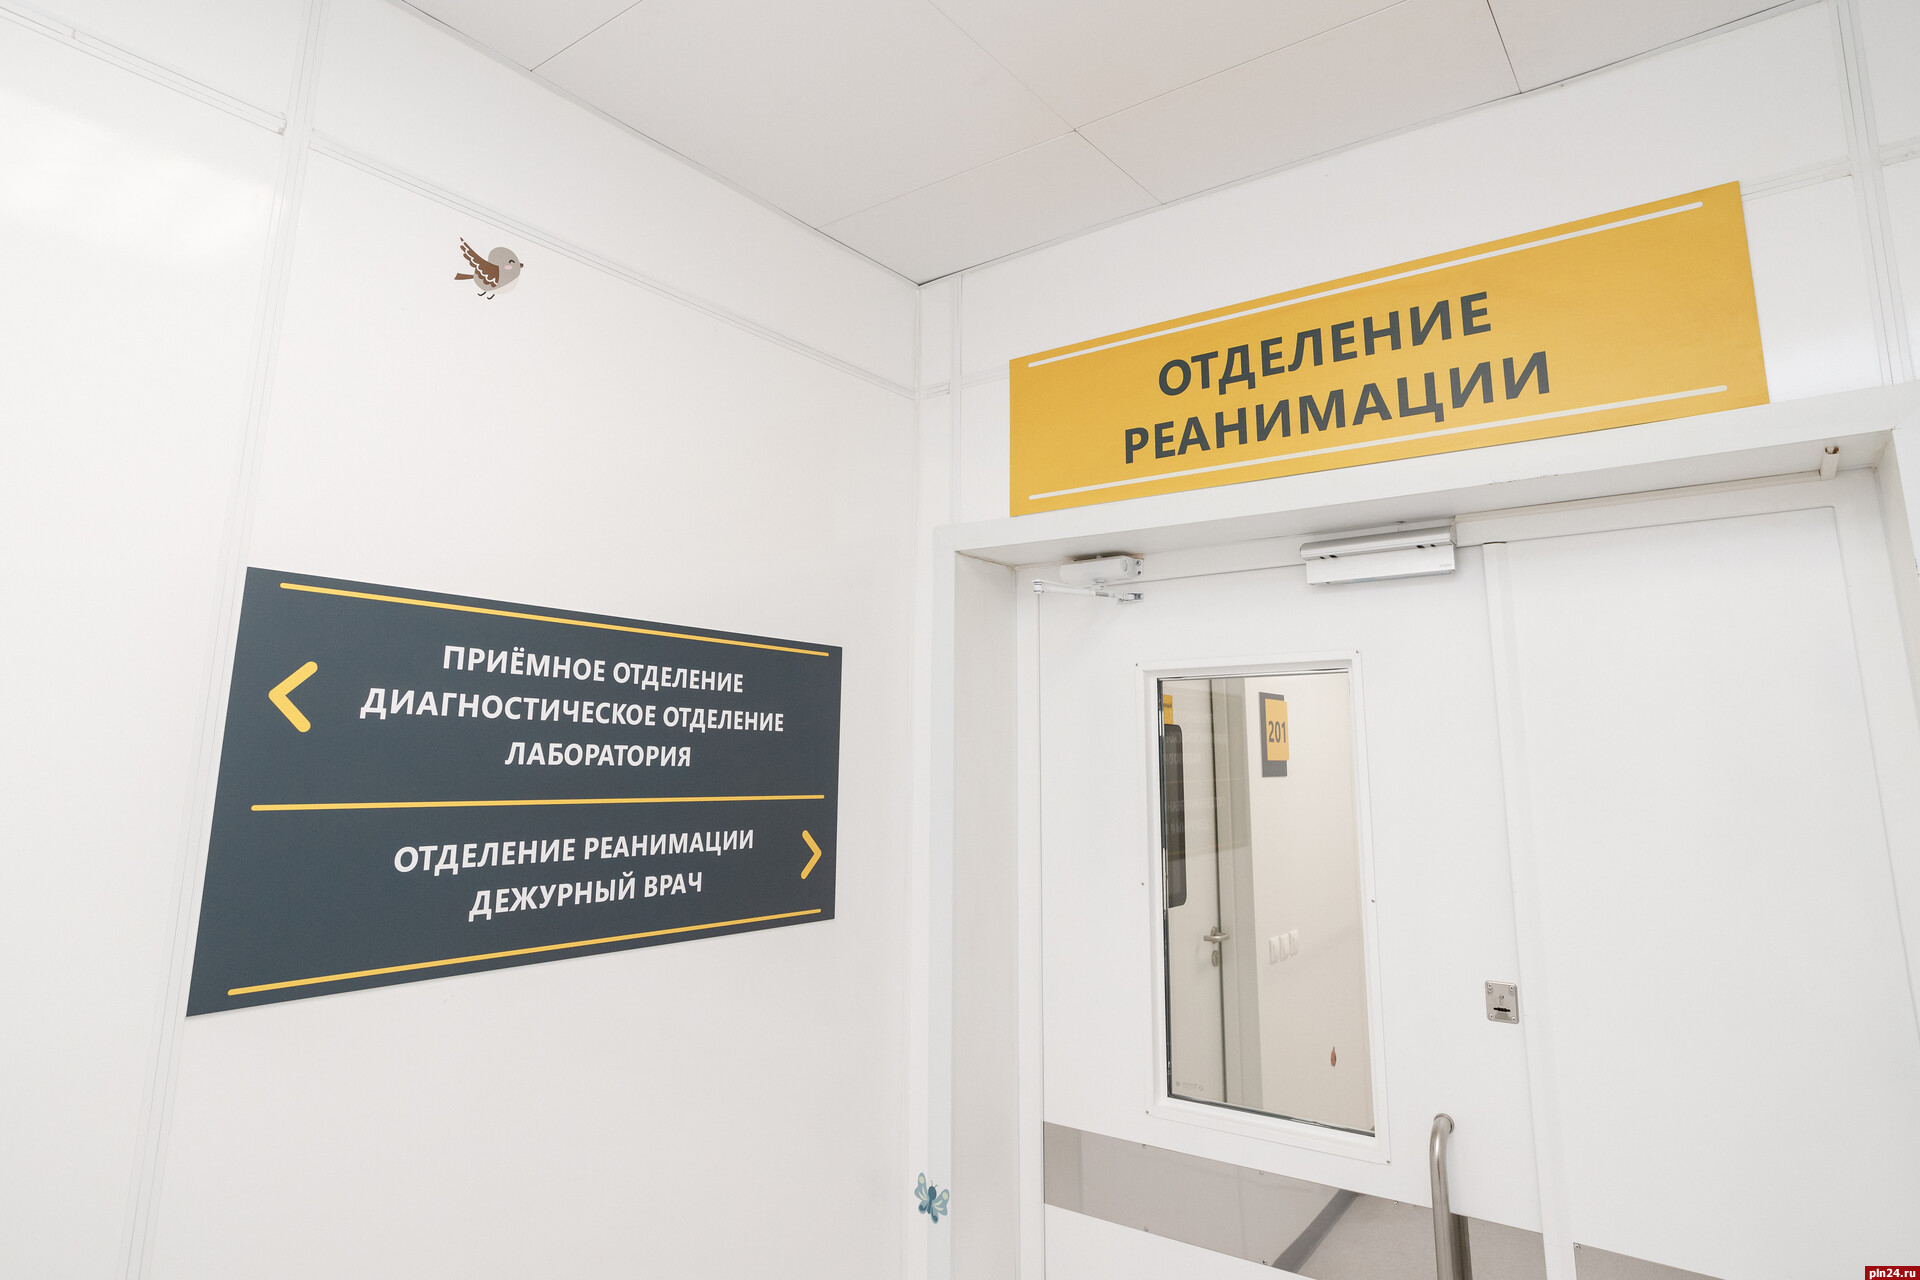 20 новых случаев заражения коронавирусом выявили в Псковской области